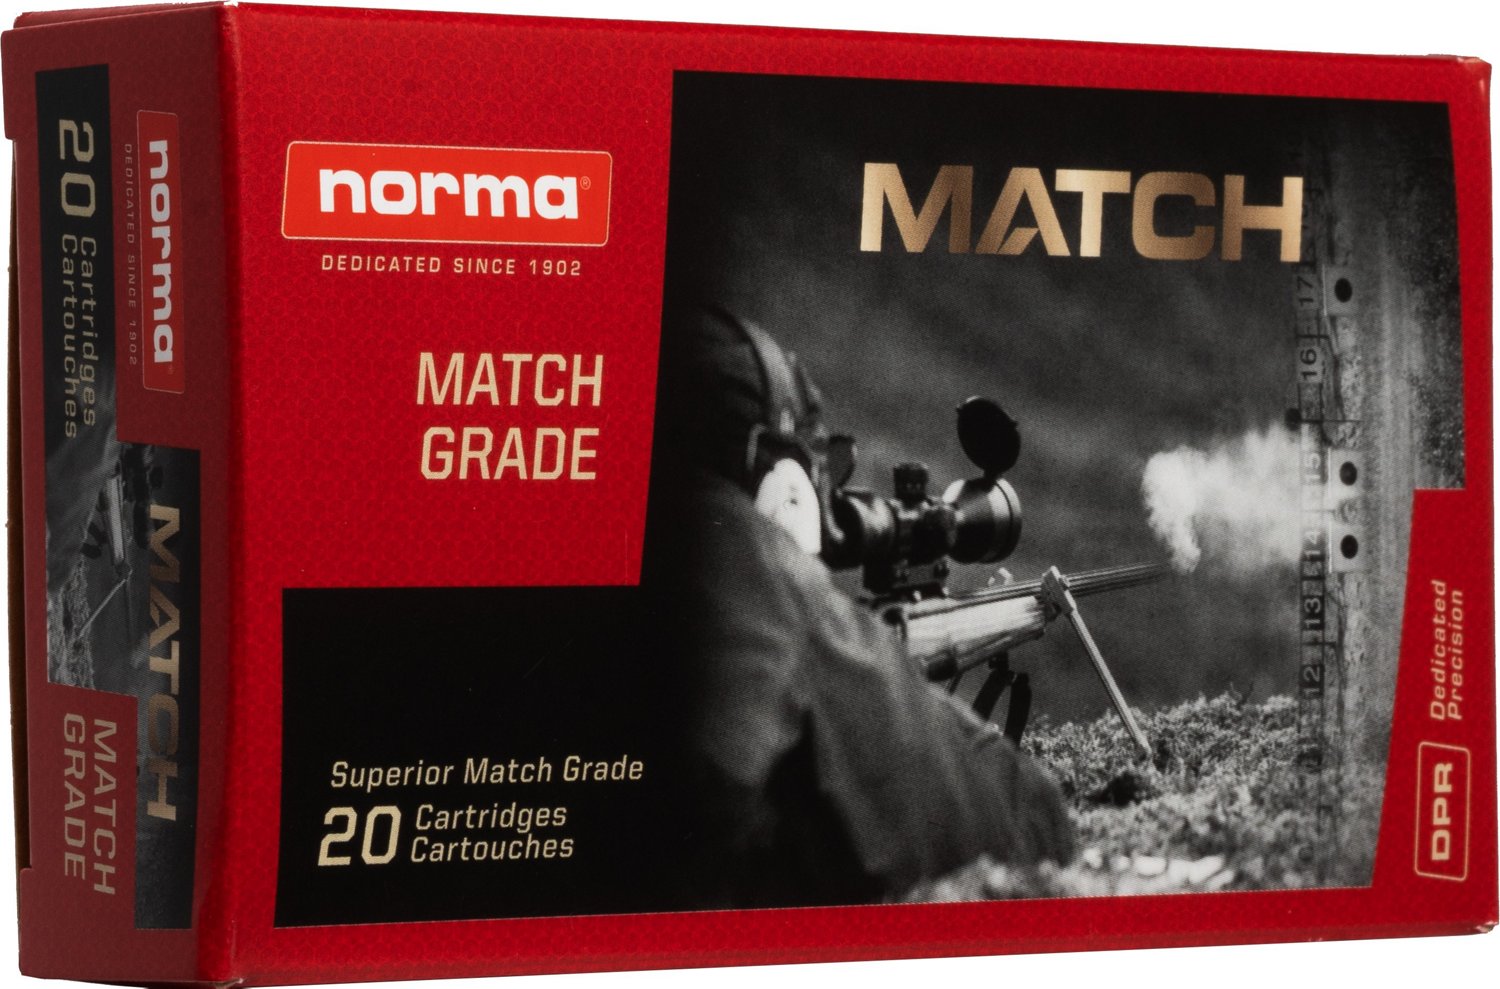 Norma USA Golden Target 6.5 PRC 143-Grain Match Ammunition - 20 Rounds ...